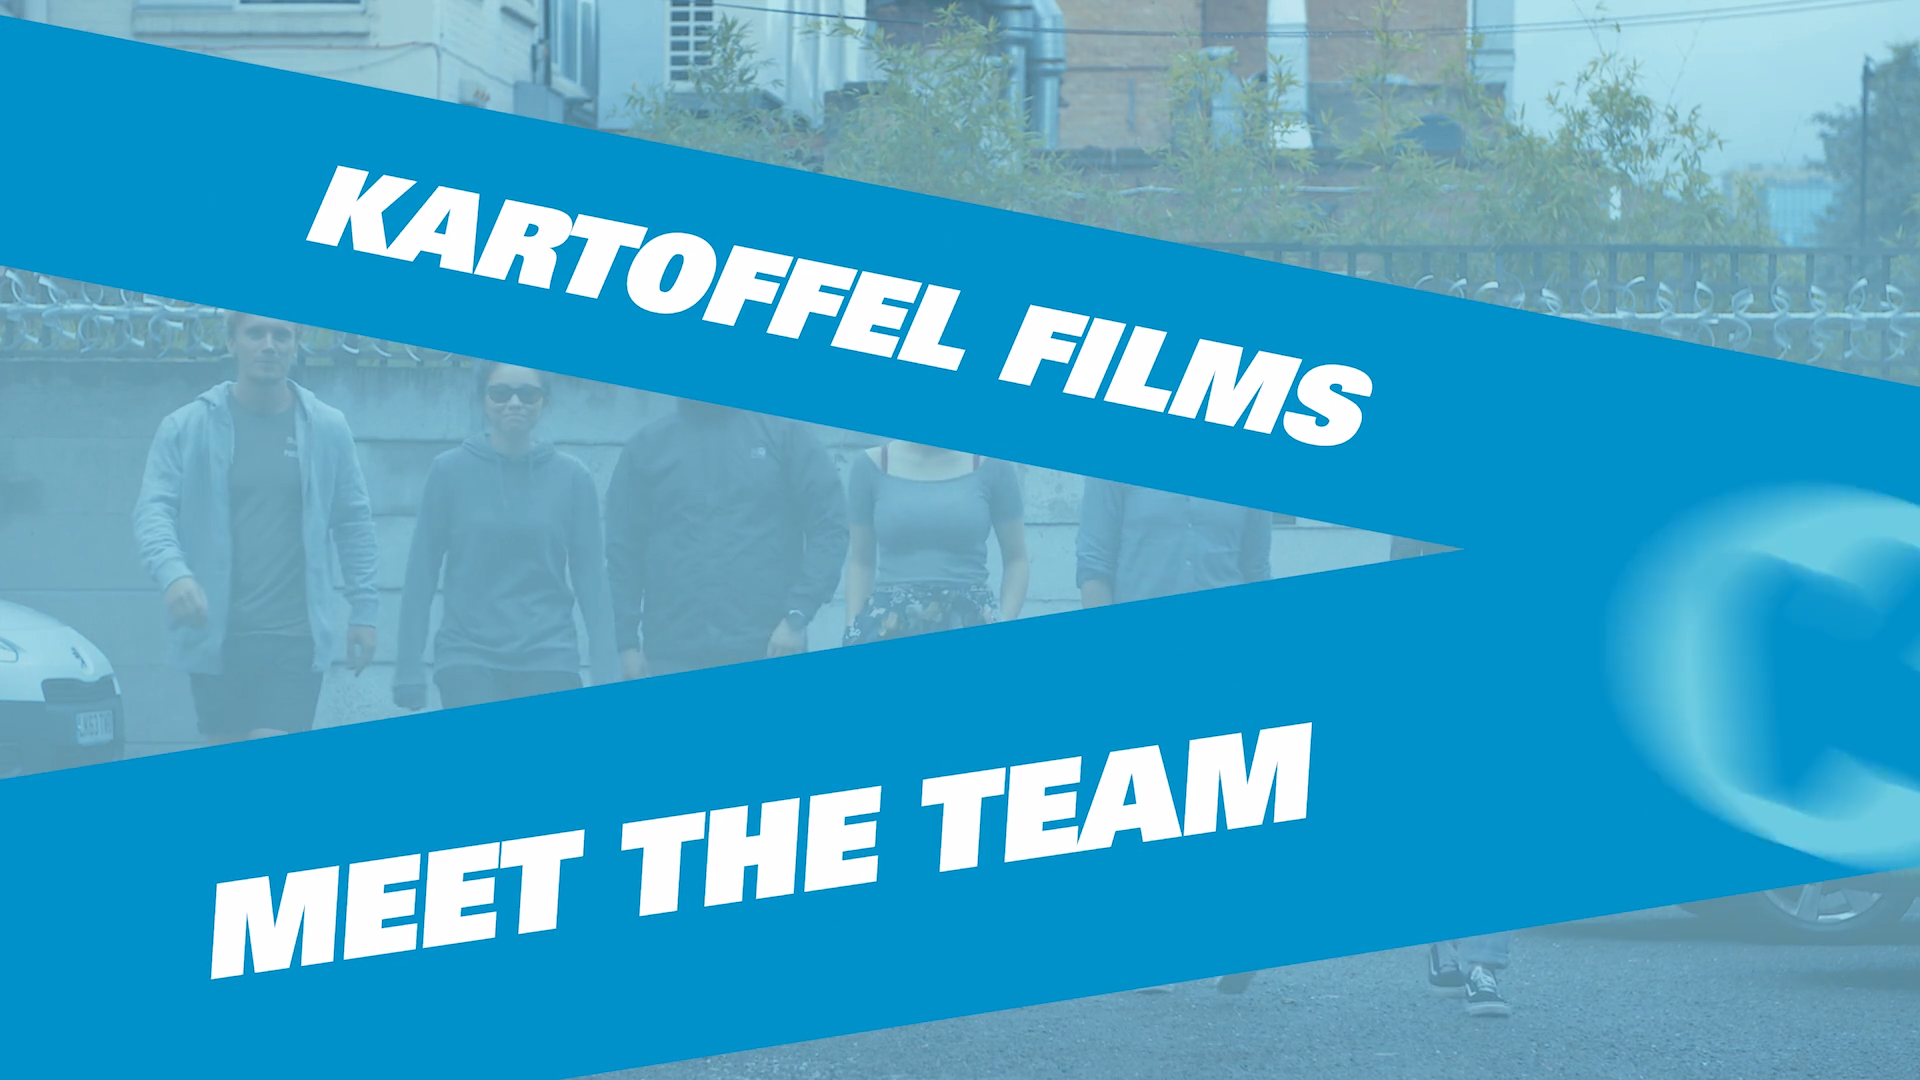 Meet The Team Film. Best Meet the Team (1)